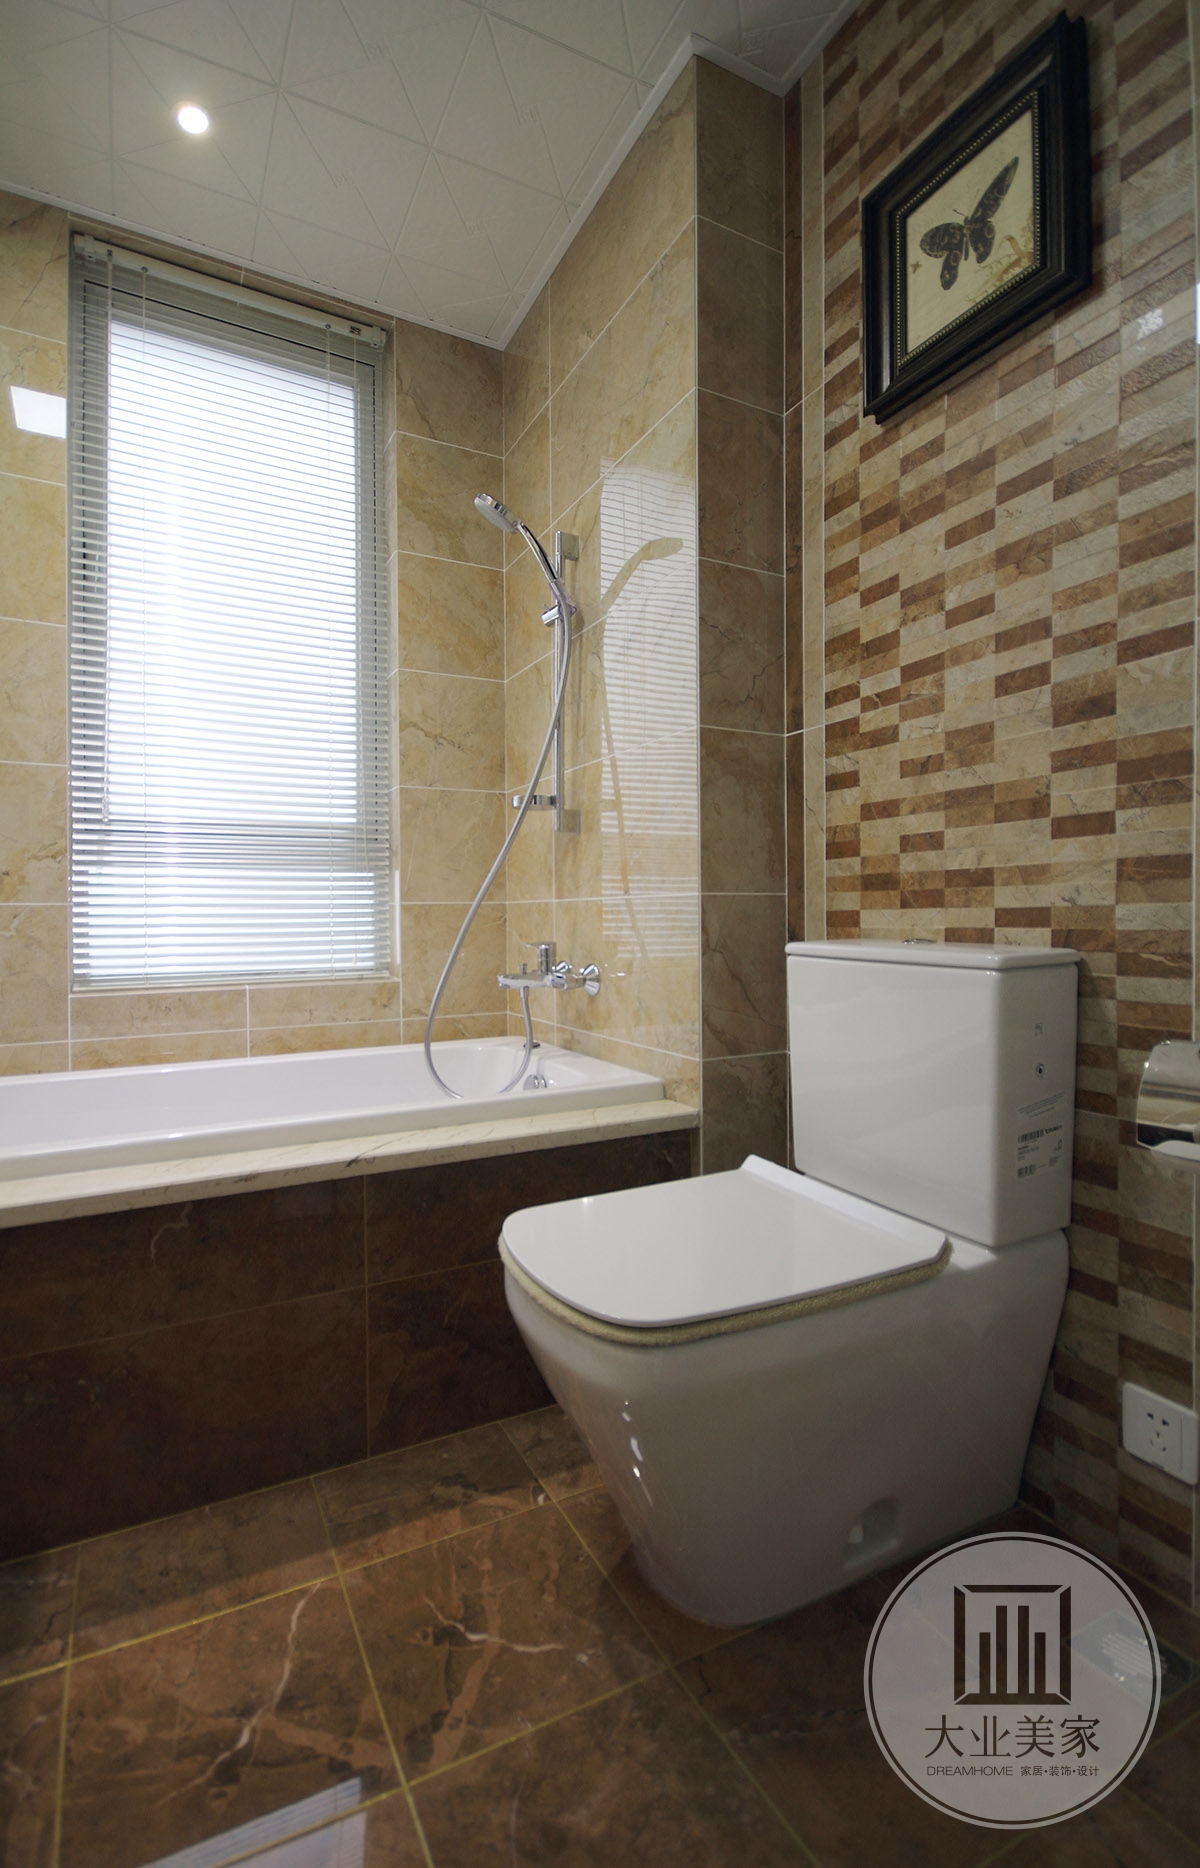 卫生间效果图：卫生间还是挺宽敞的，放置了浴缸，可以舒适地泡澡。黑脚白色浴缸搭配黑色和铜质的五金，展示干净复古风格。